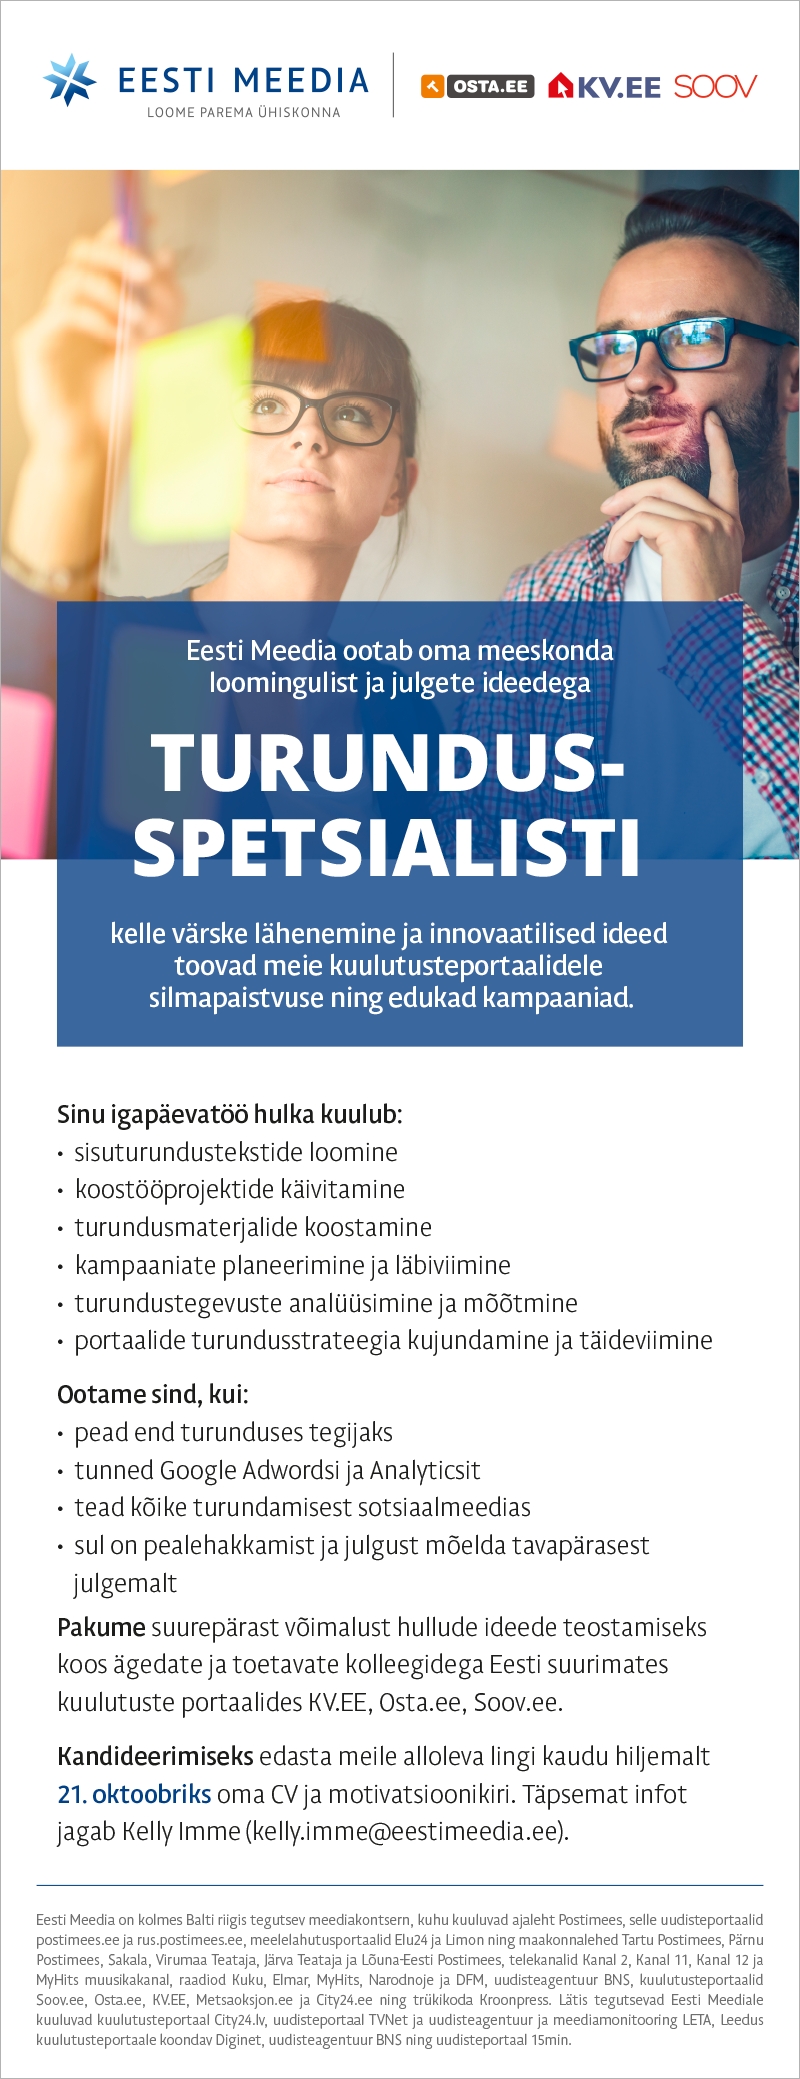 Eesti Meedia Turundusspetsialist